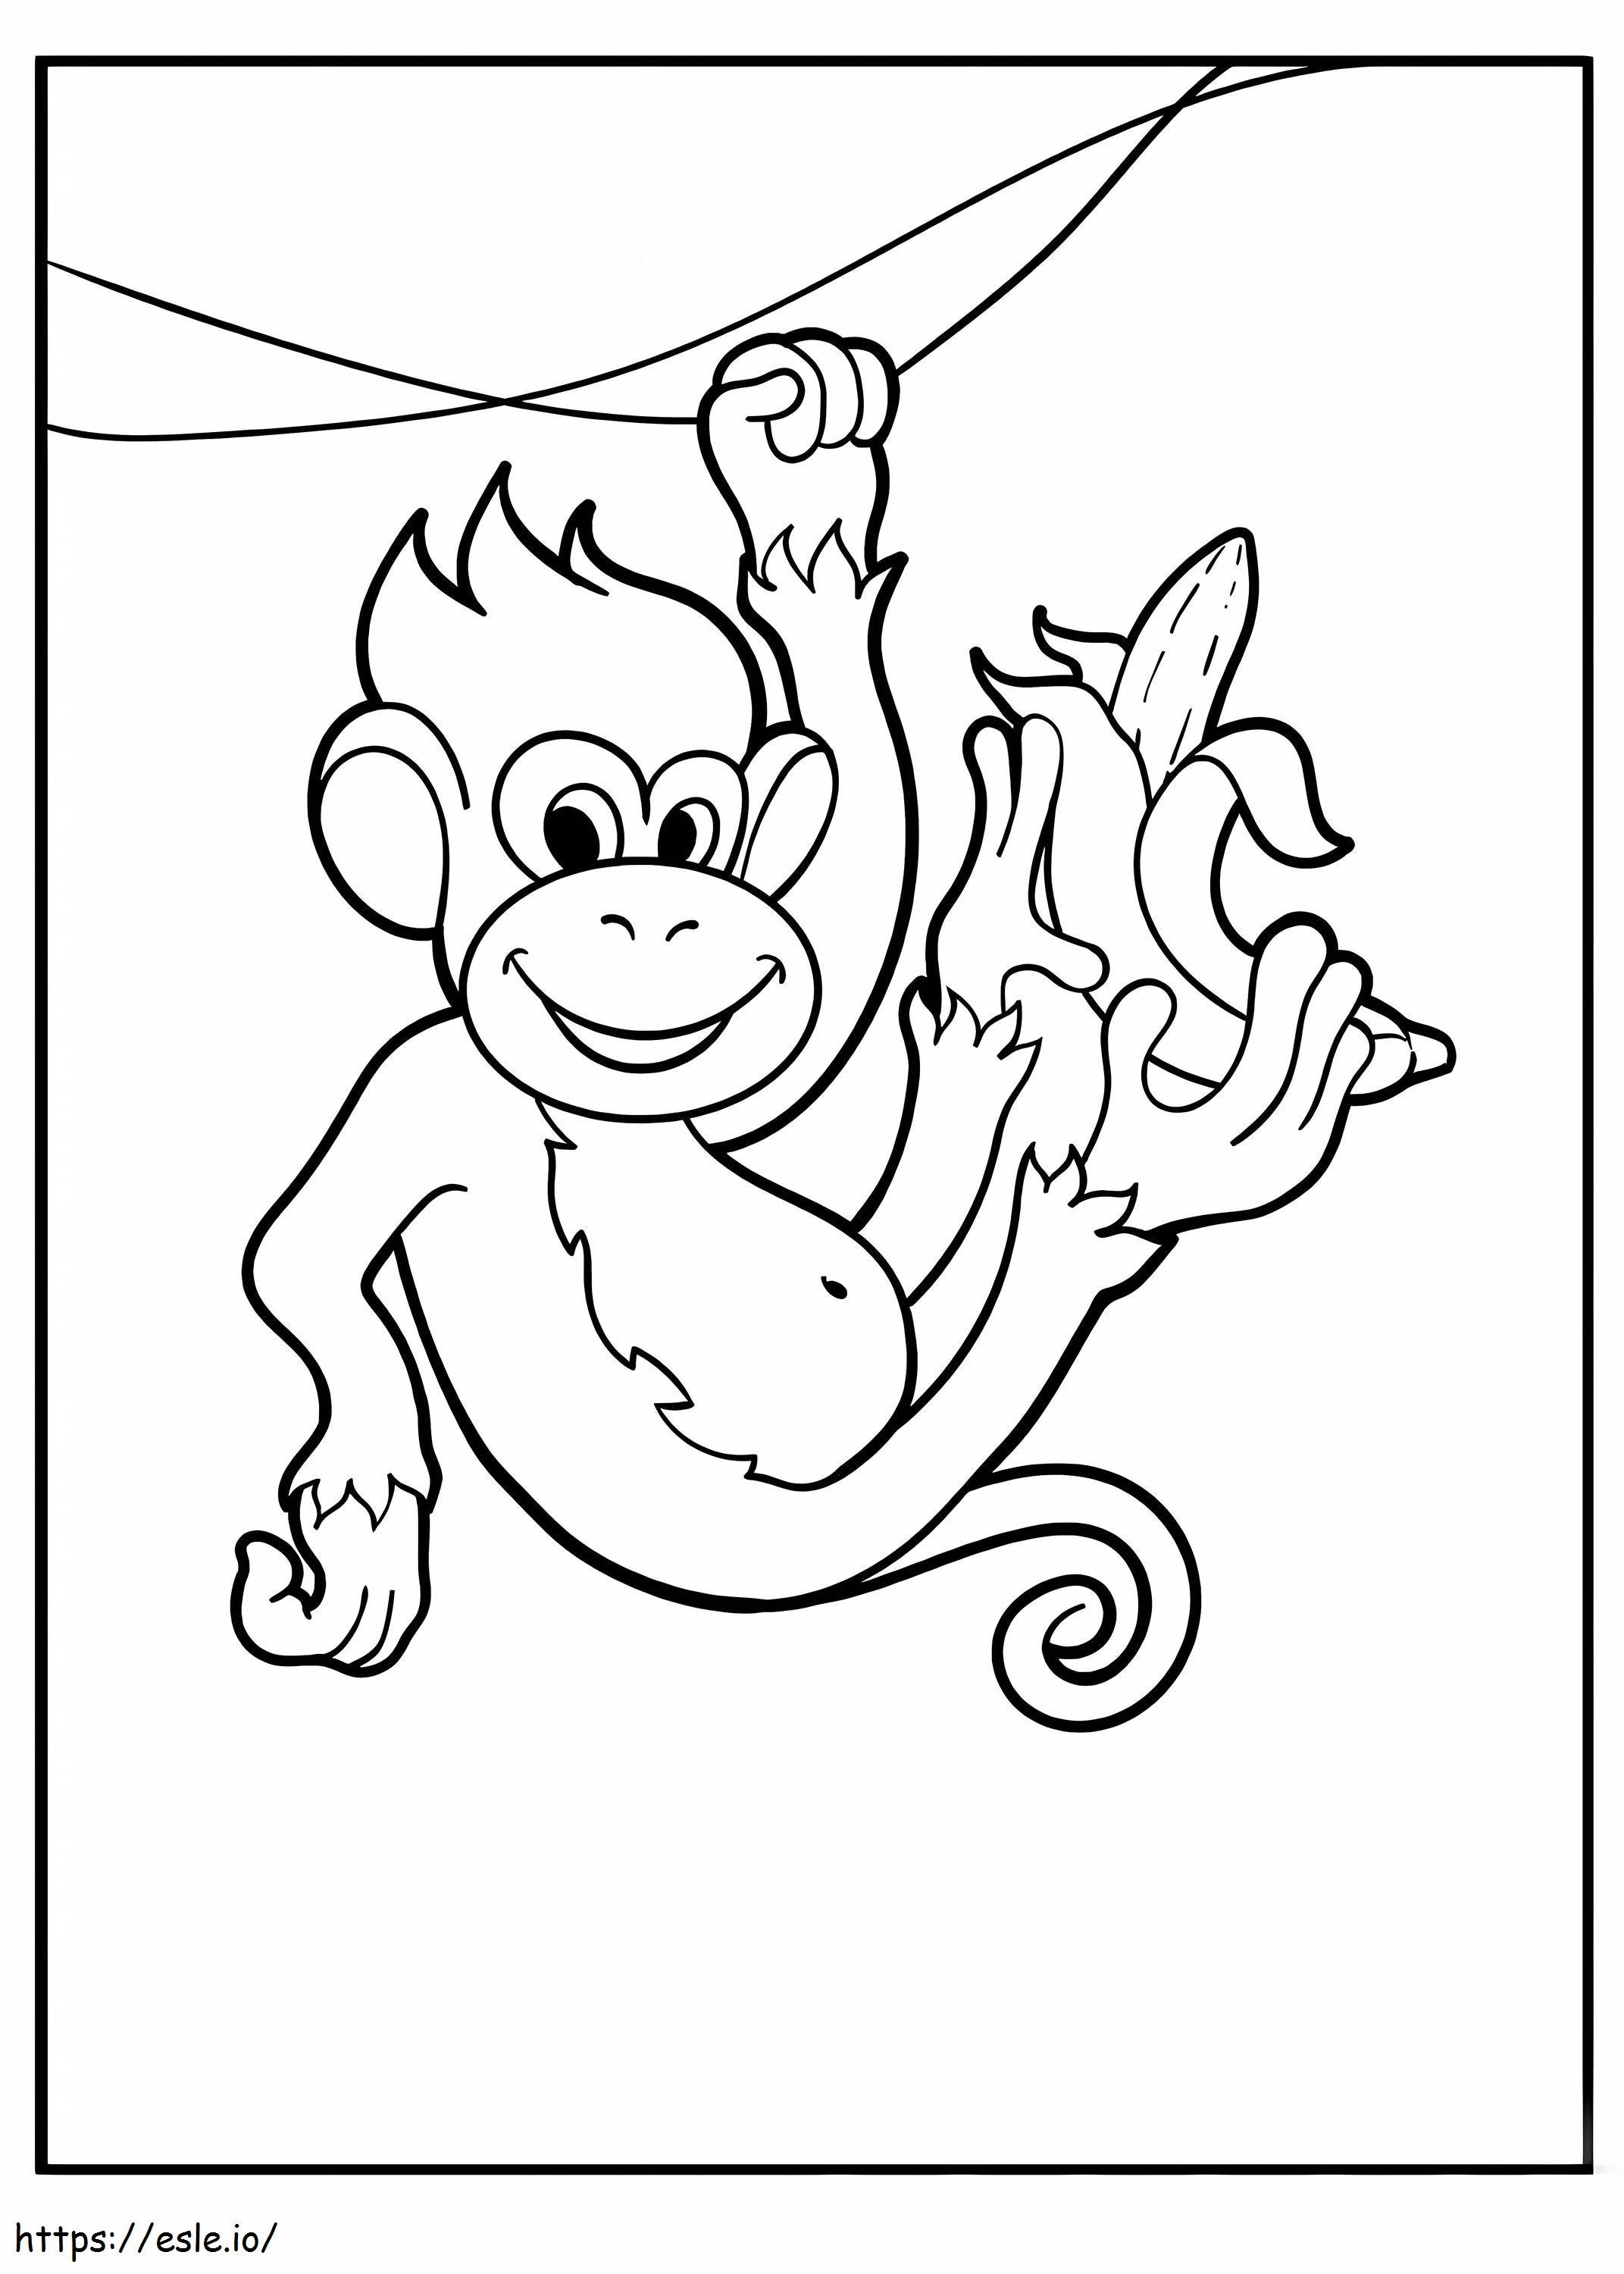 Macaco escalando galho de árvore com banana para colorir